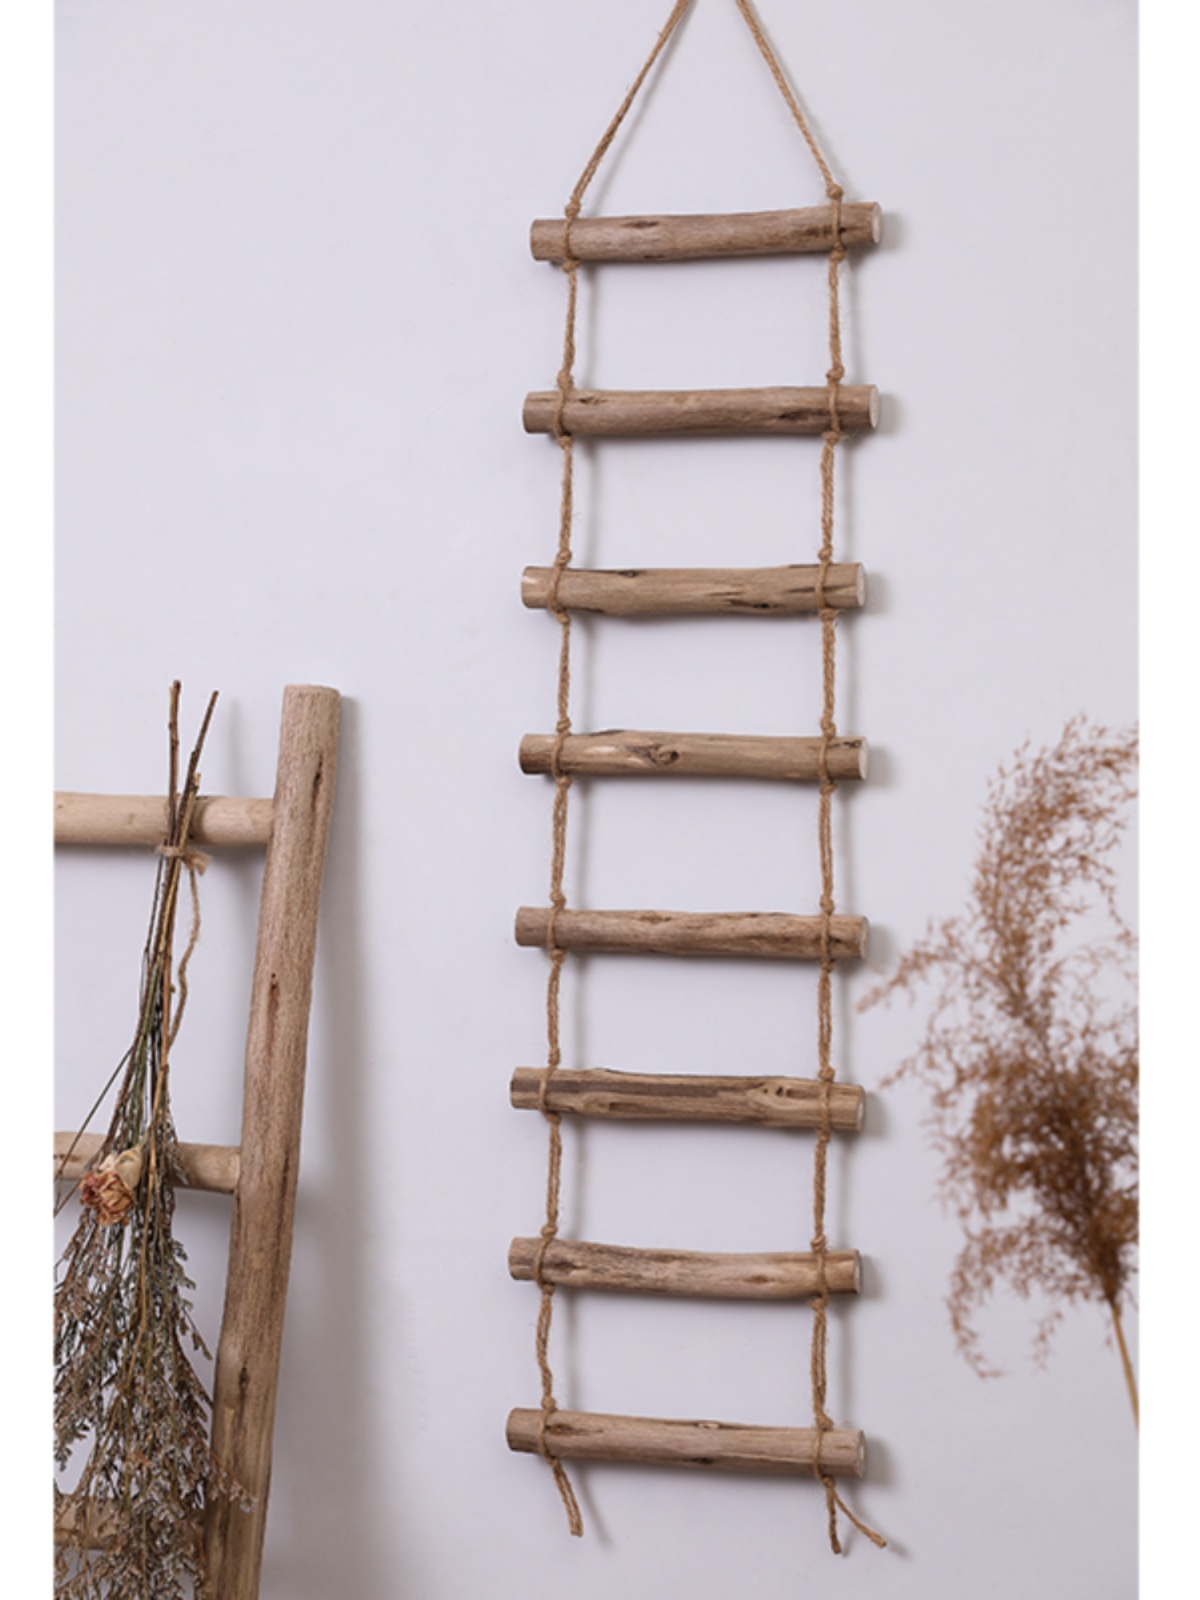 创意墙面装饰木梯子北欧麻绳树枝拍照道具幼儿园民宿墙壁挂件挂饰